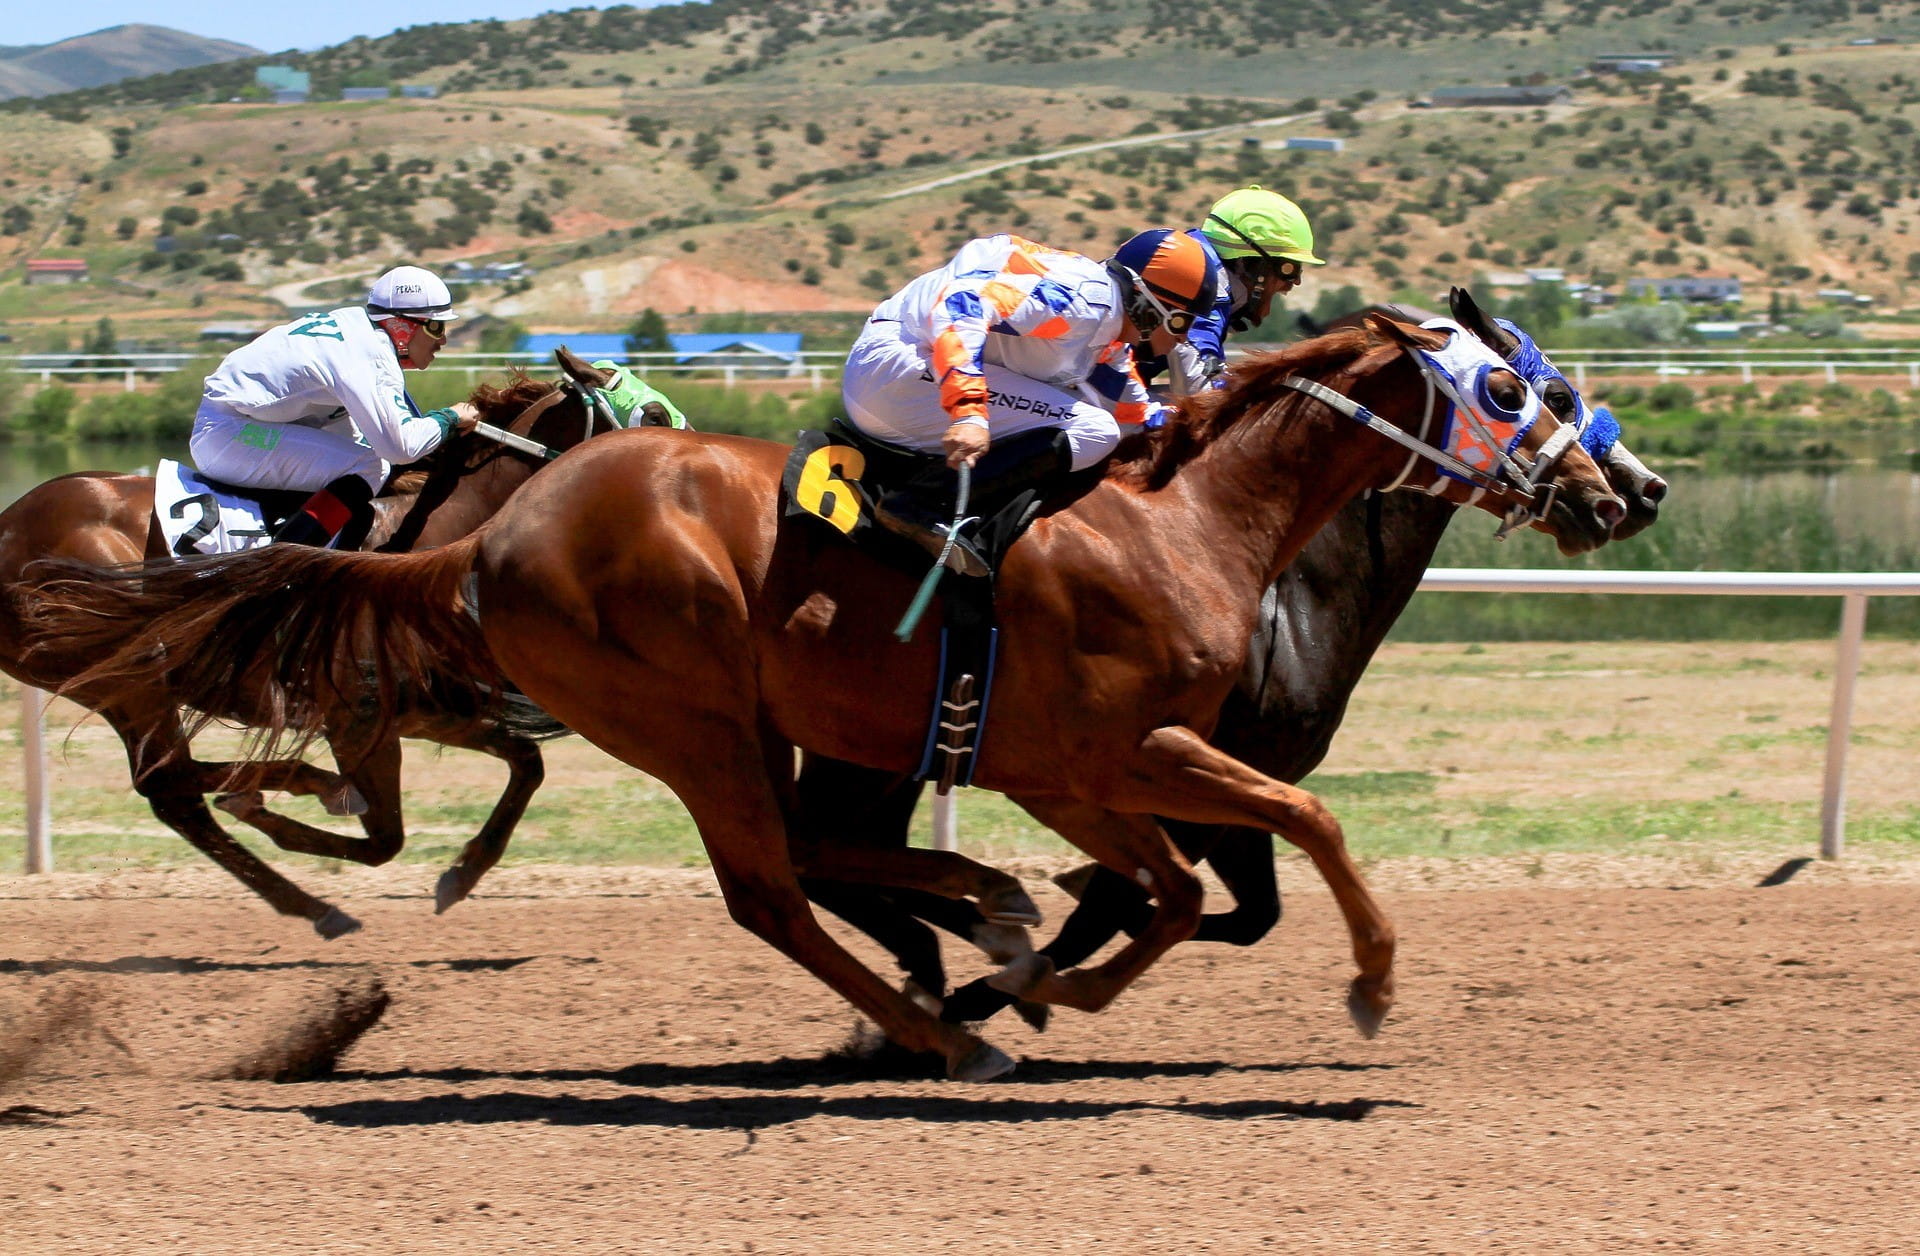 Pferderennen mit drei Pferden – zwei hiervon liefern sich ein knappes Rennen um die Spitze.